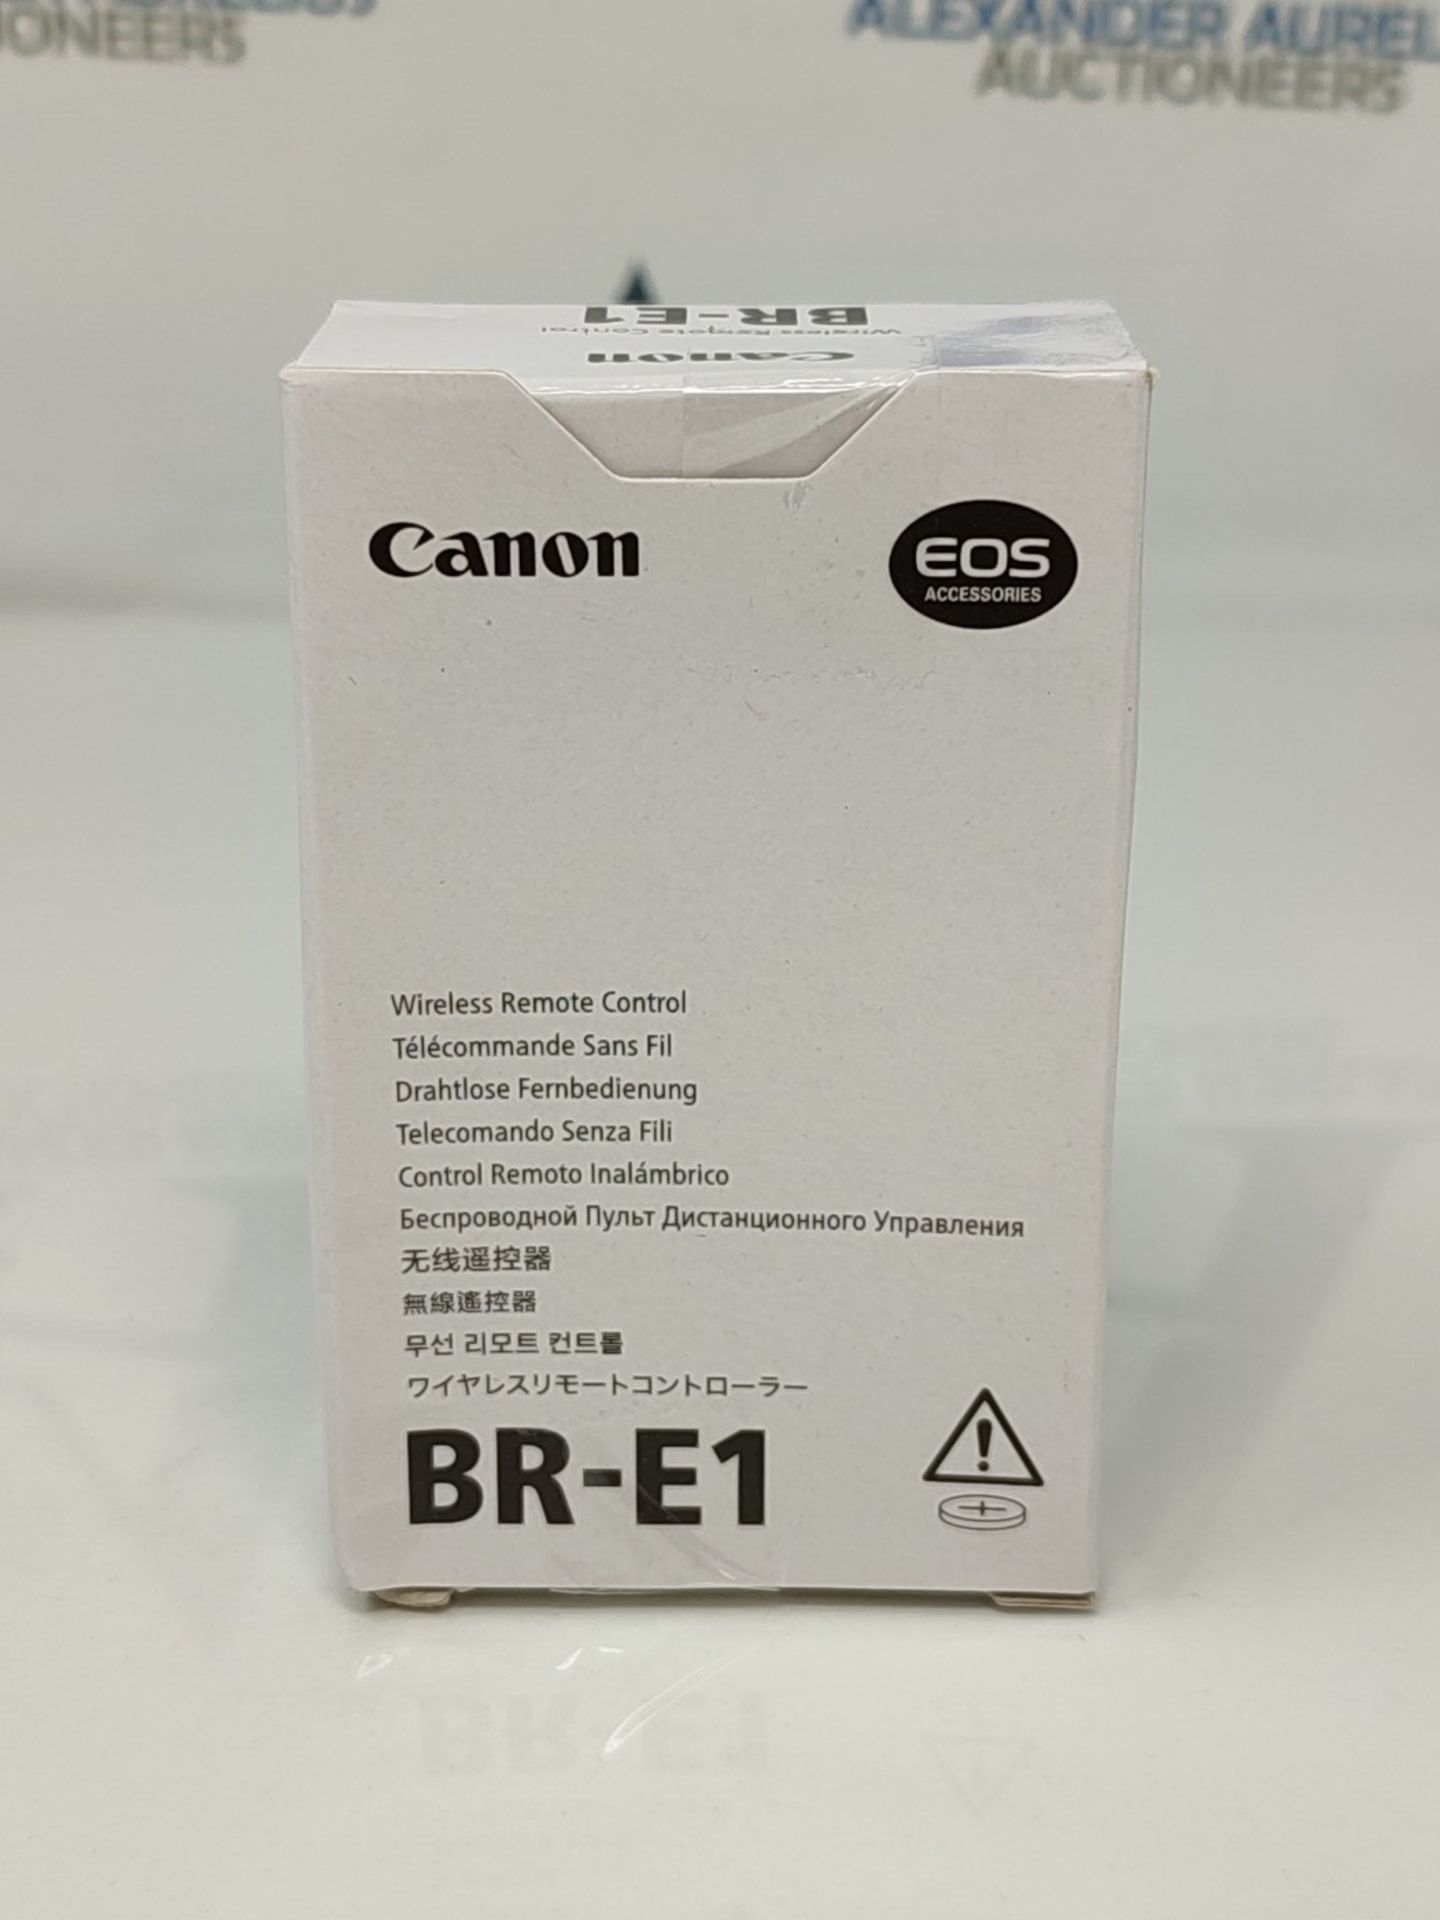 CANON Remote Control BR-E1 - Image 2 of 6